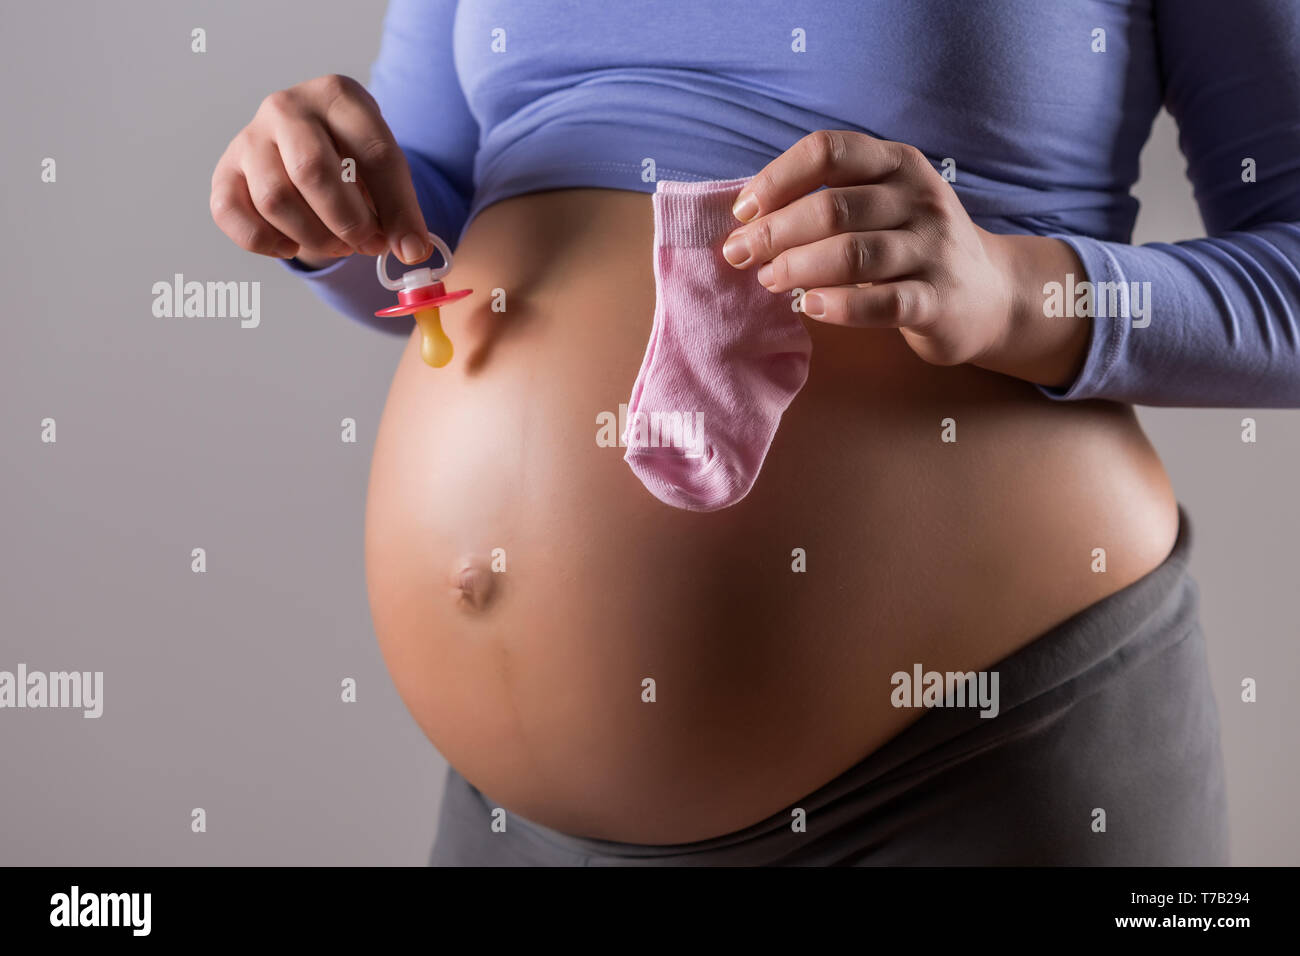 Immagine del ventre della donna incinta con tenendo il succhietto e calzini per bambina su sfondo grigio. Foto Stock